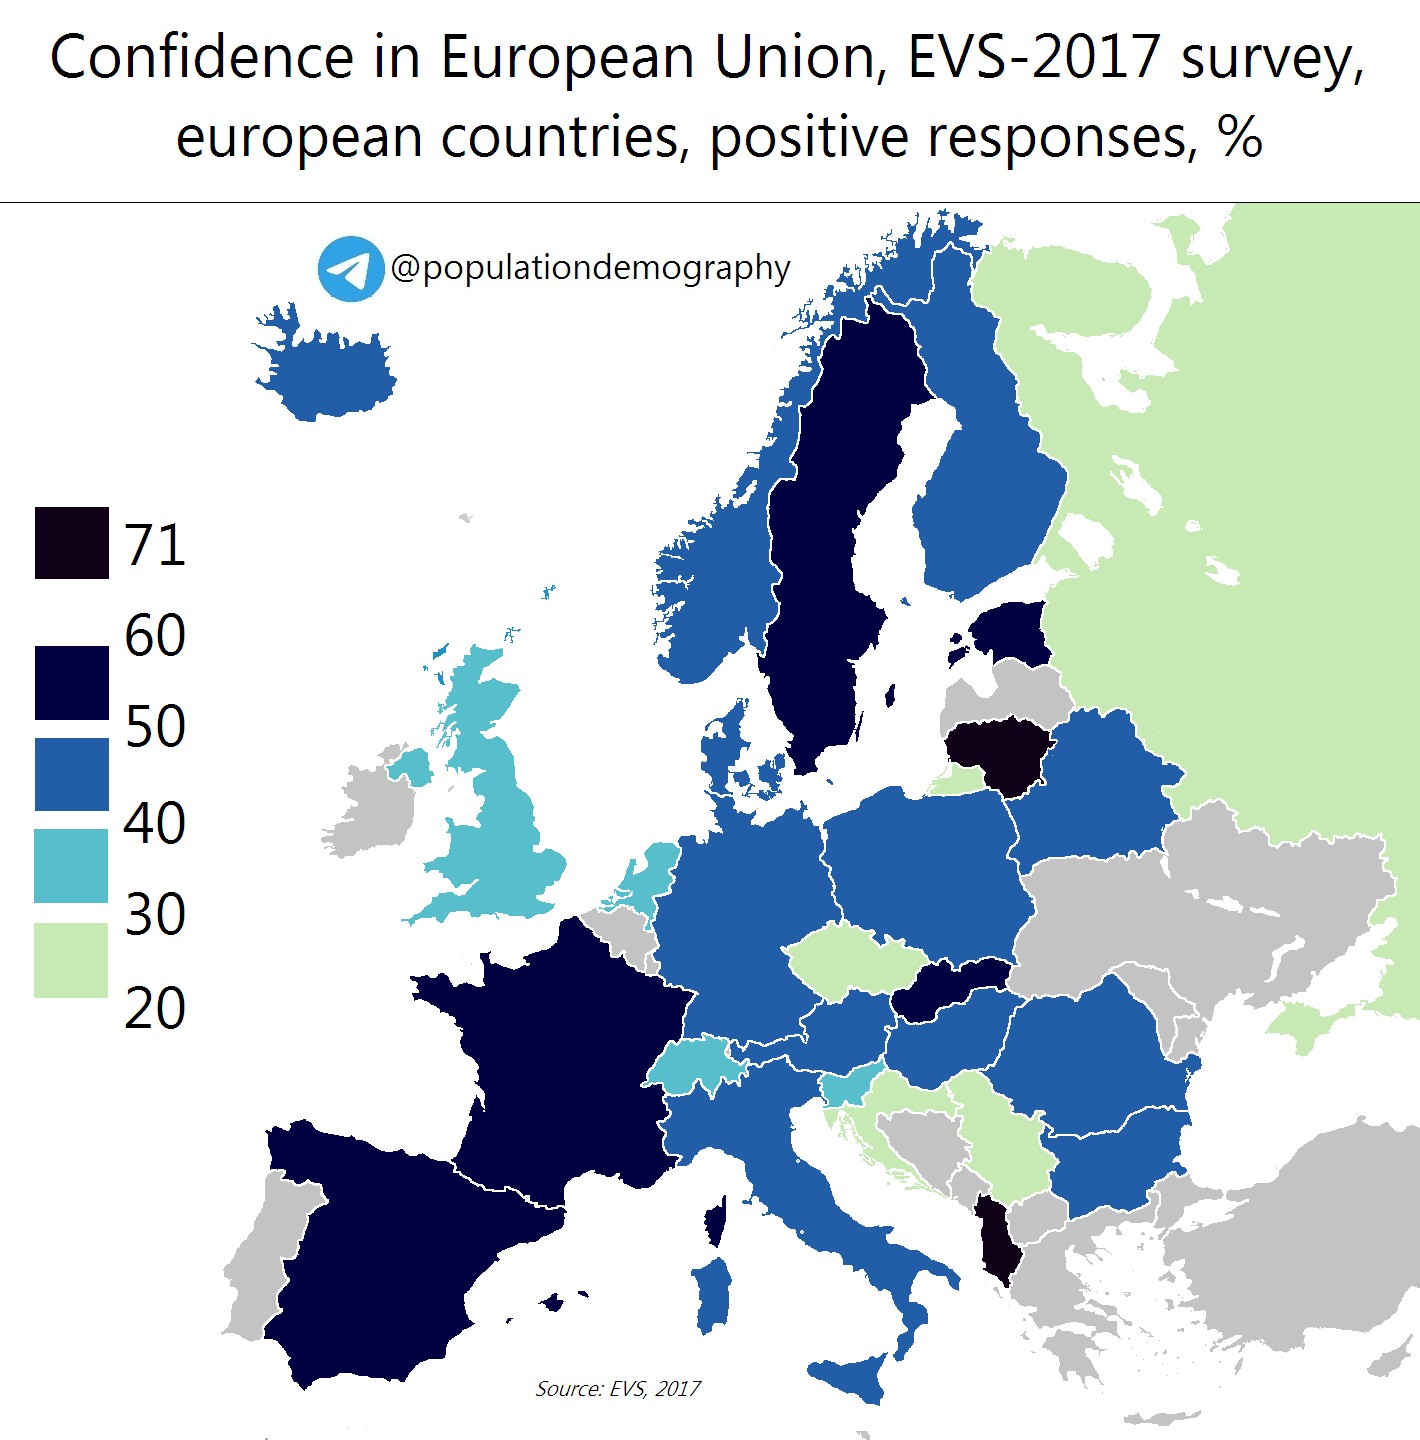 Zaufanie do Unii Europejskiej wśród Europejczyków, badanie EVS-2017